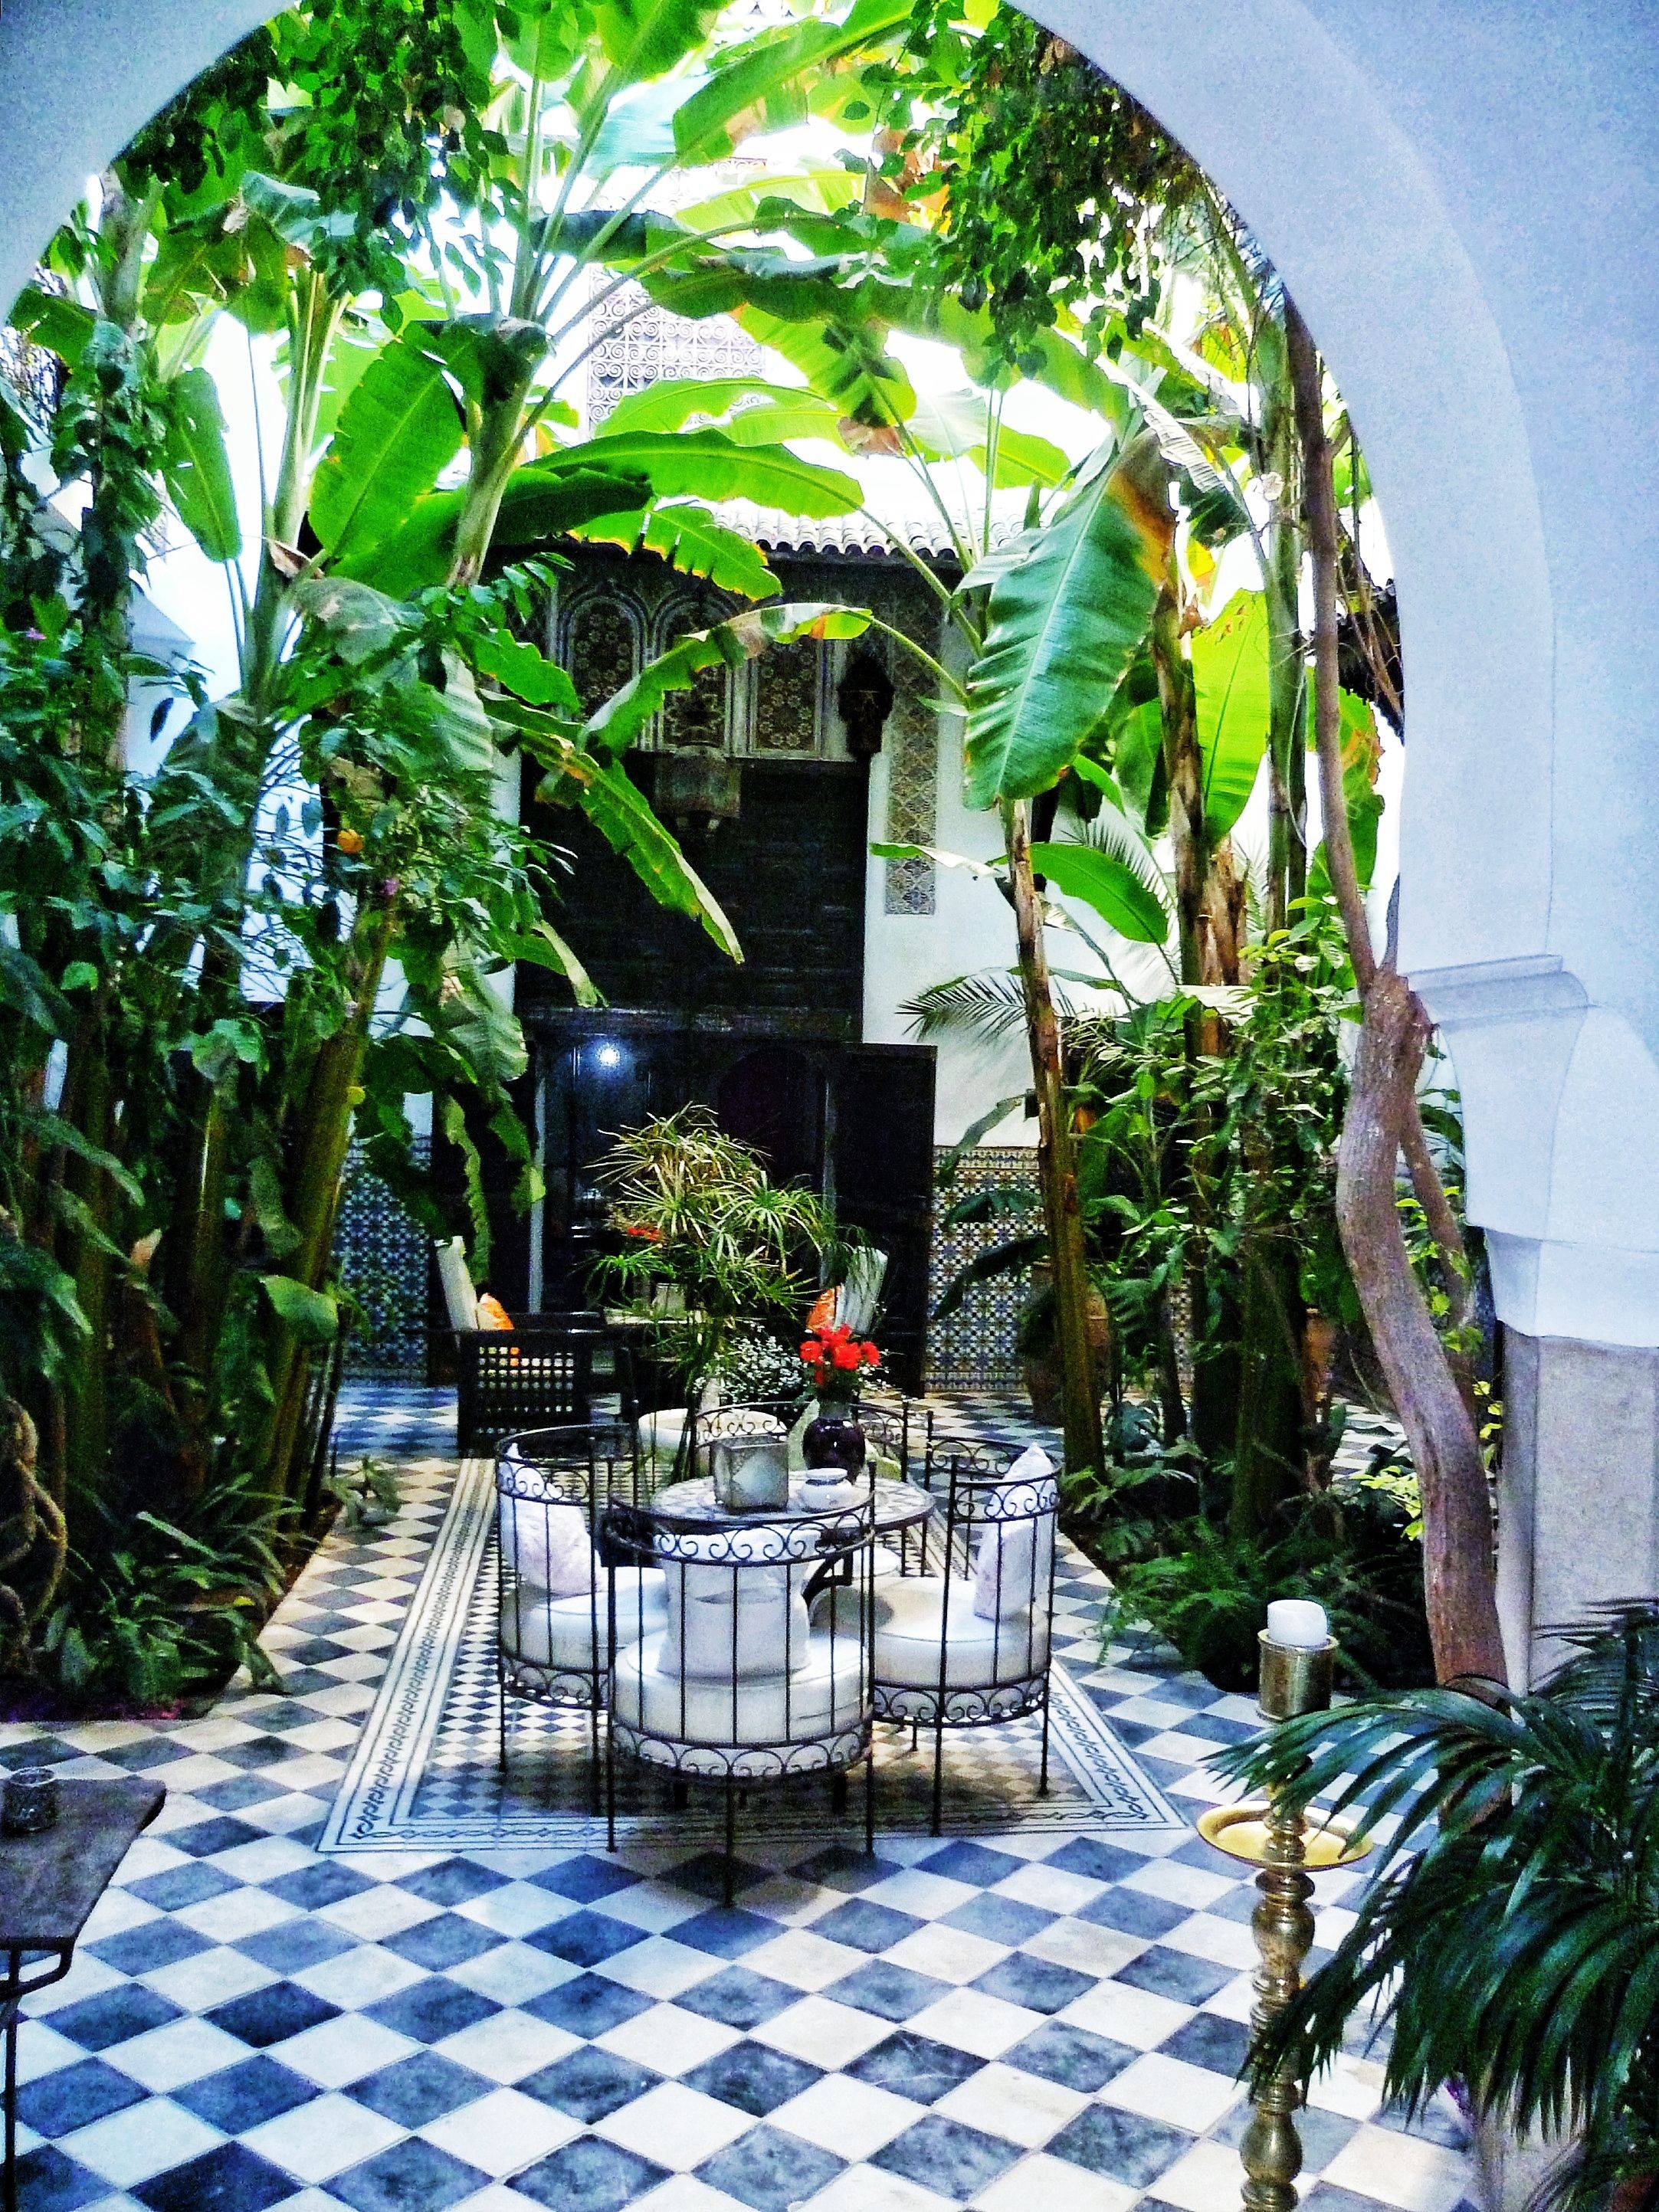 A Moroccan Courtyard Garden Very Charming